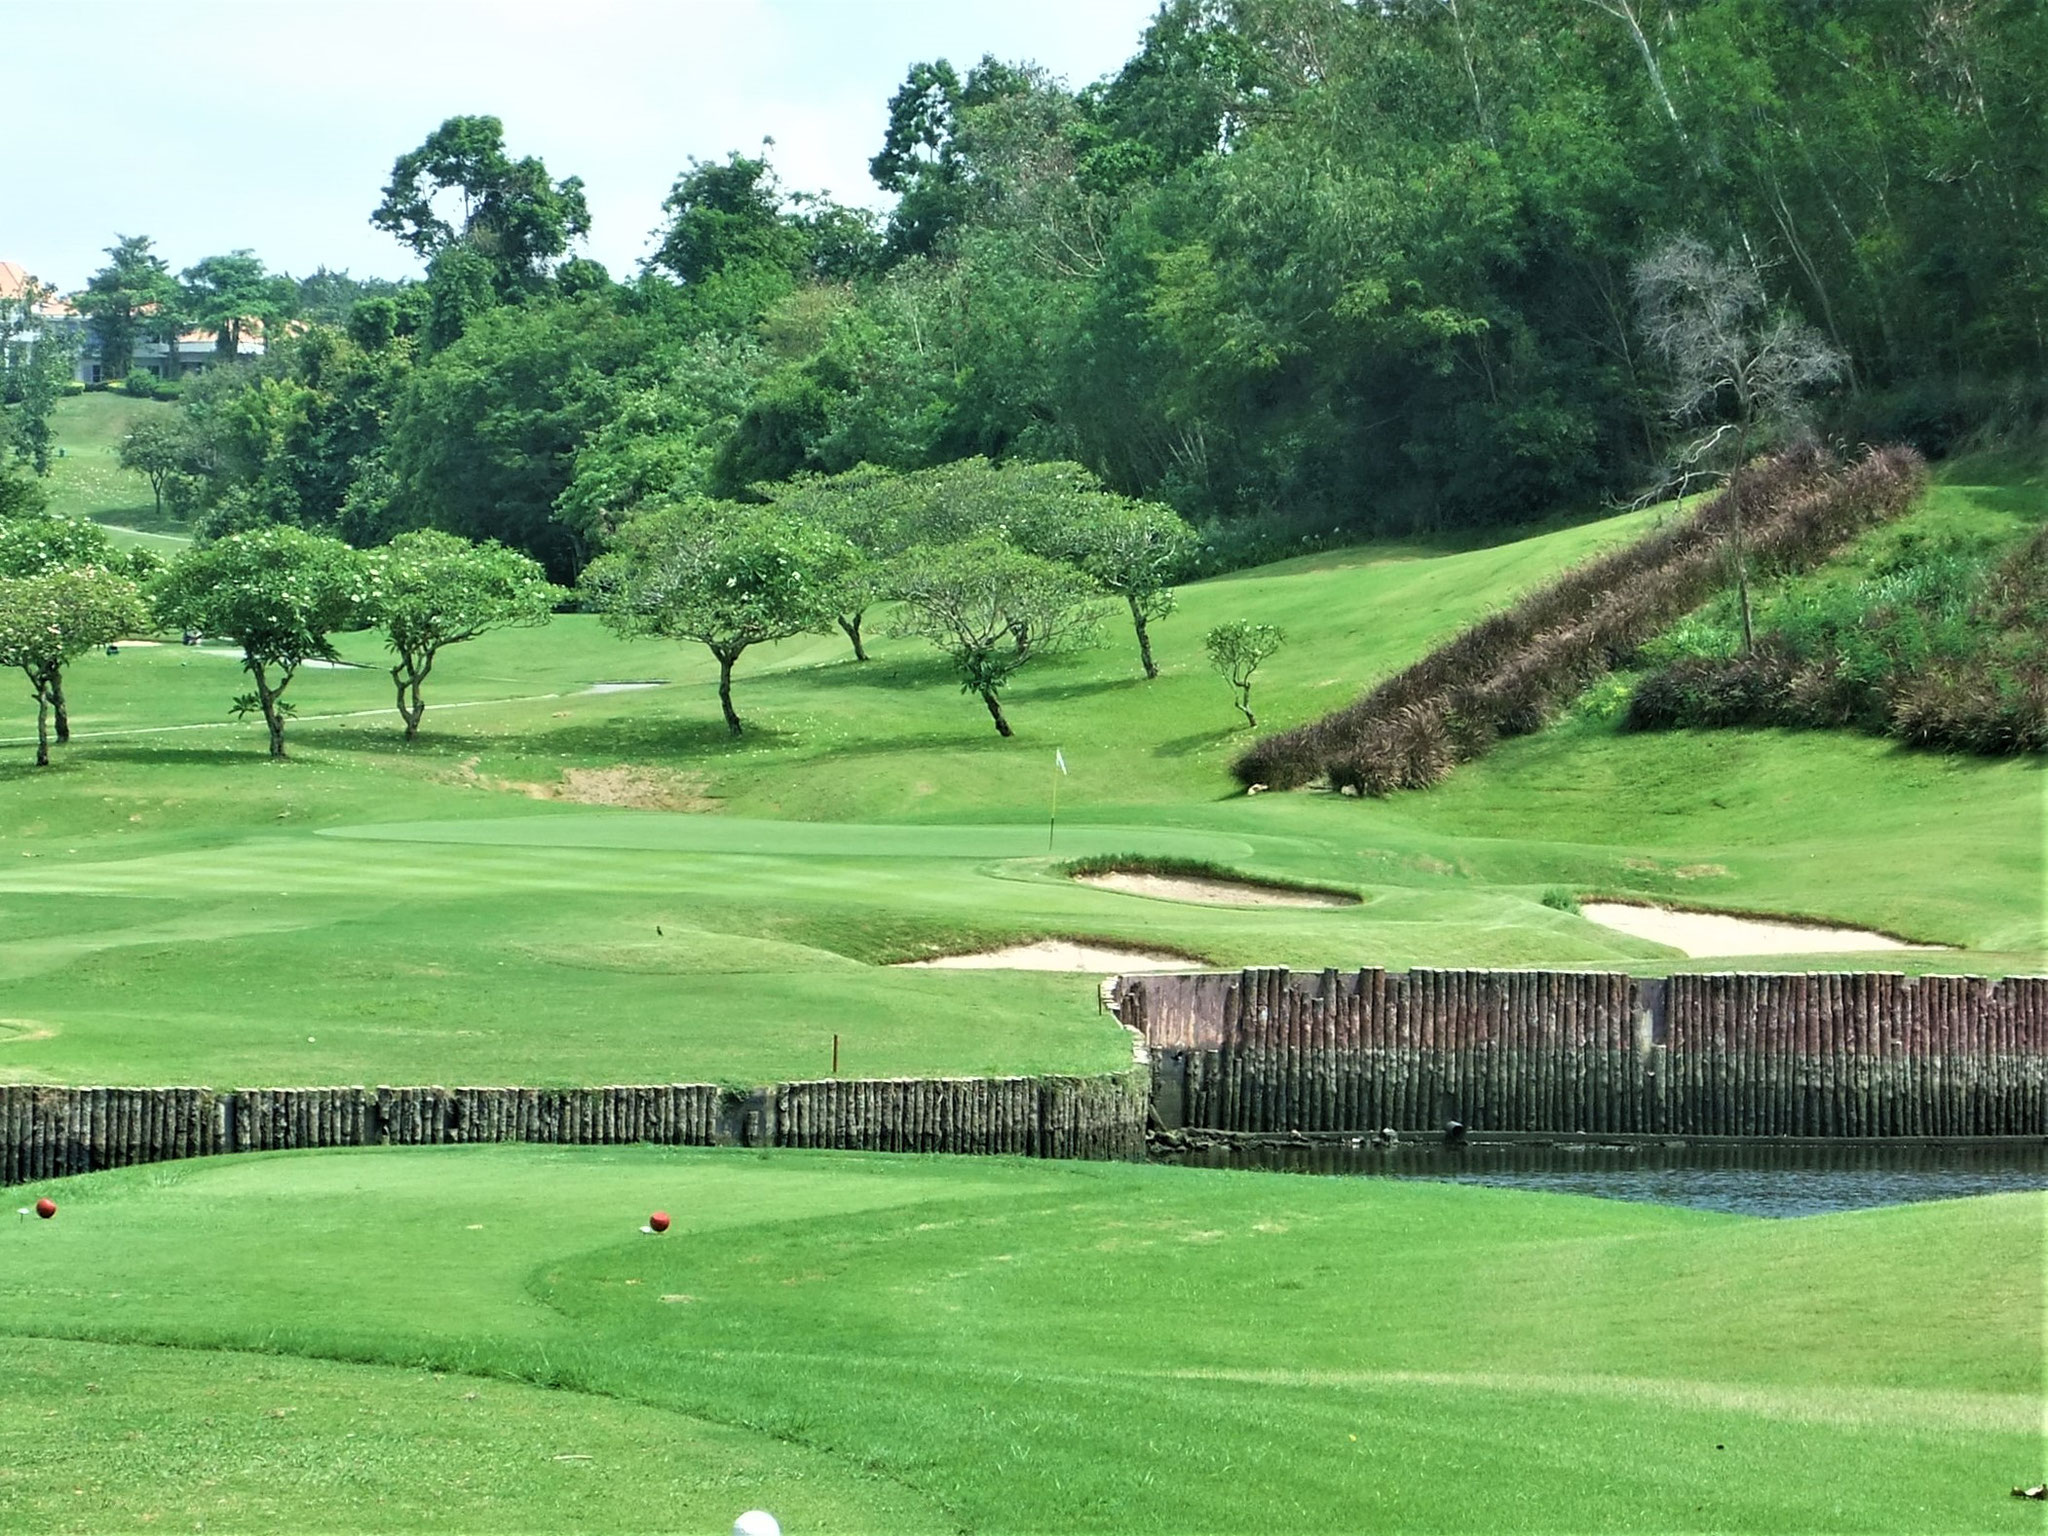 ブラパ ゴルフ リゾート Golfasian ゴルフアジアン タイを中心とした東南アジアのゴルフ場予約 バンコク パタヤ